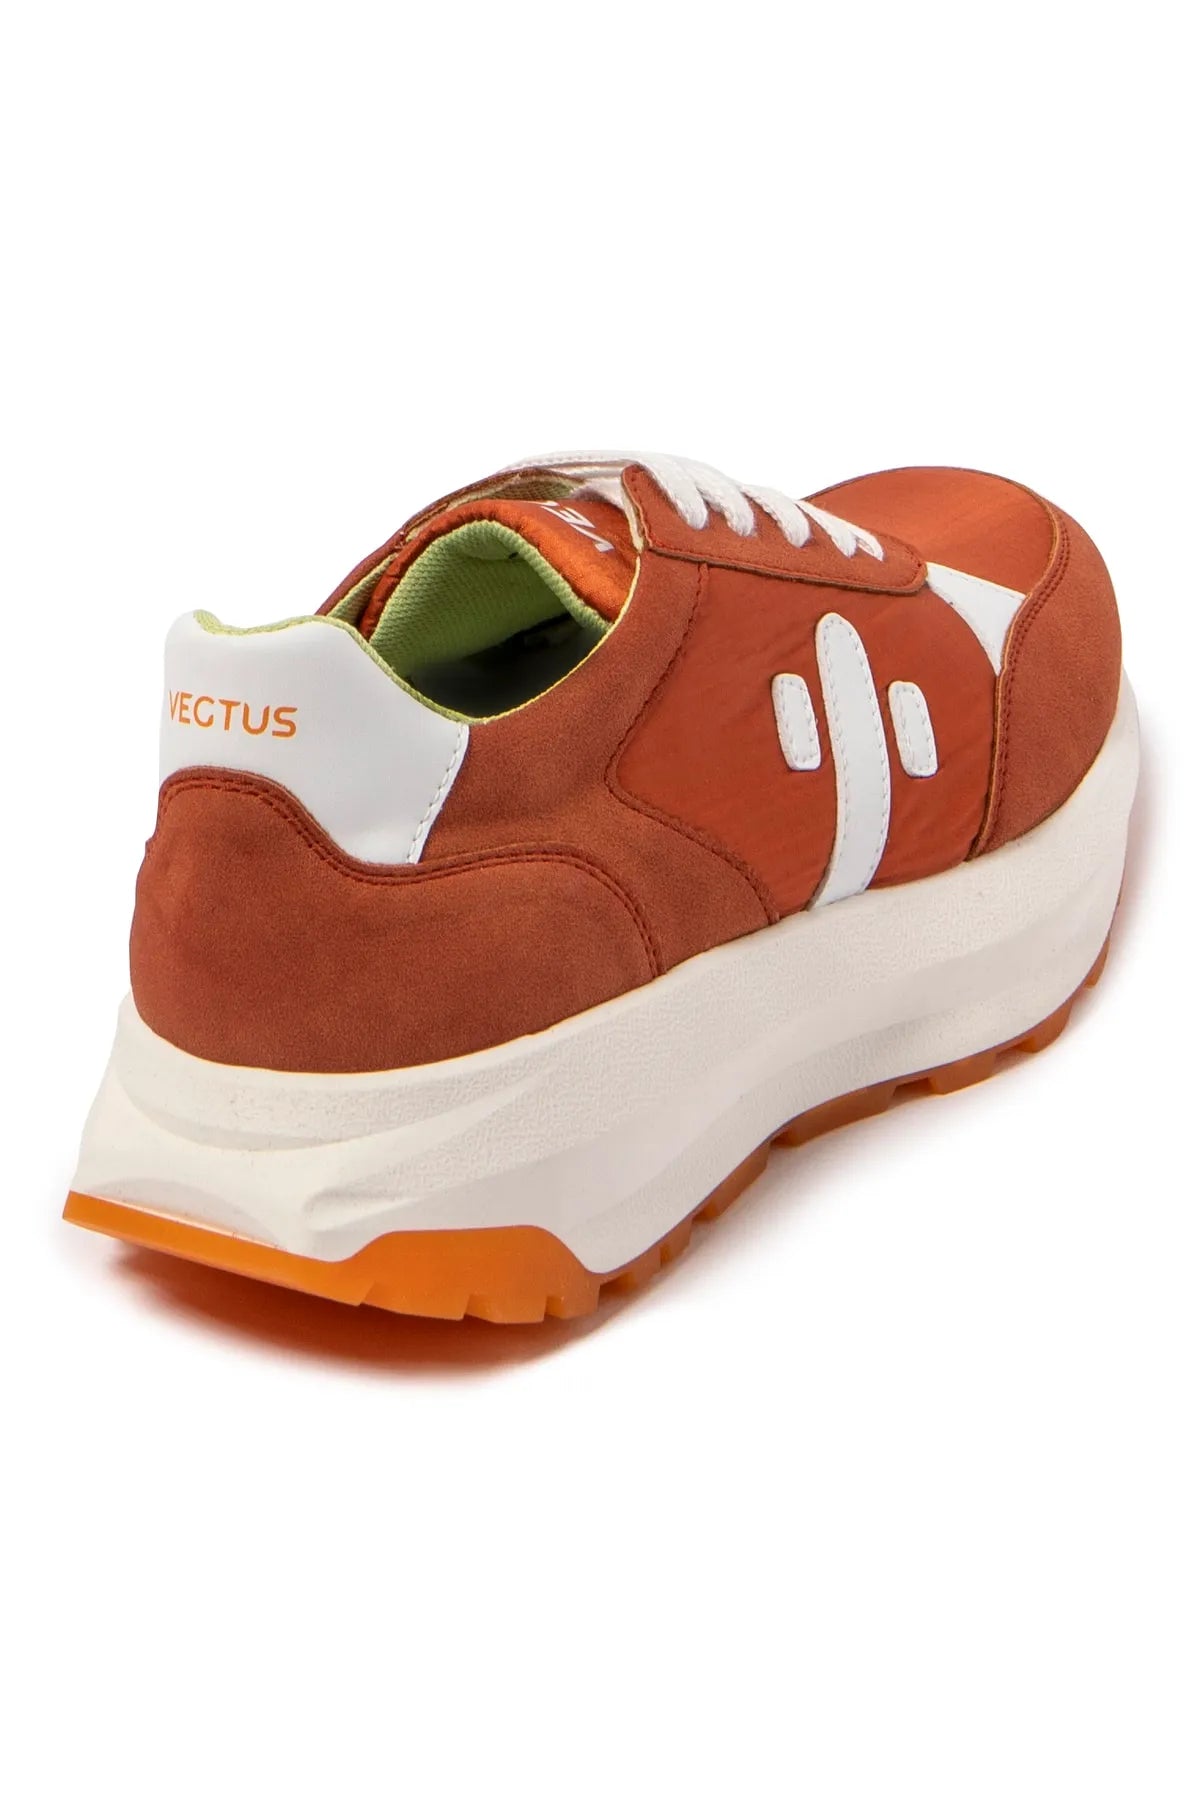 Vegtus Patagonia Orange Kadın Spor Ayakkabı